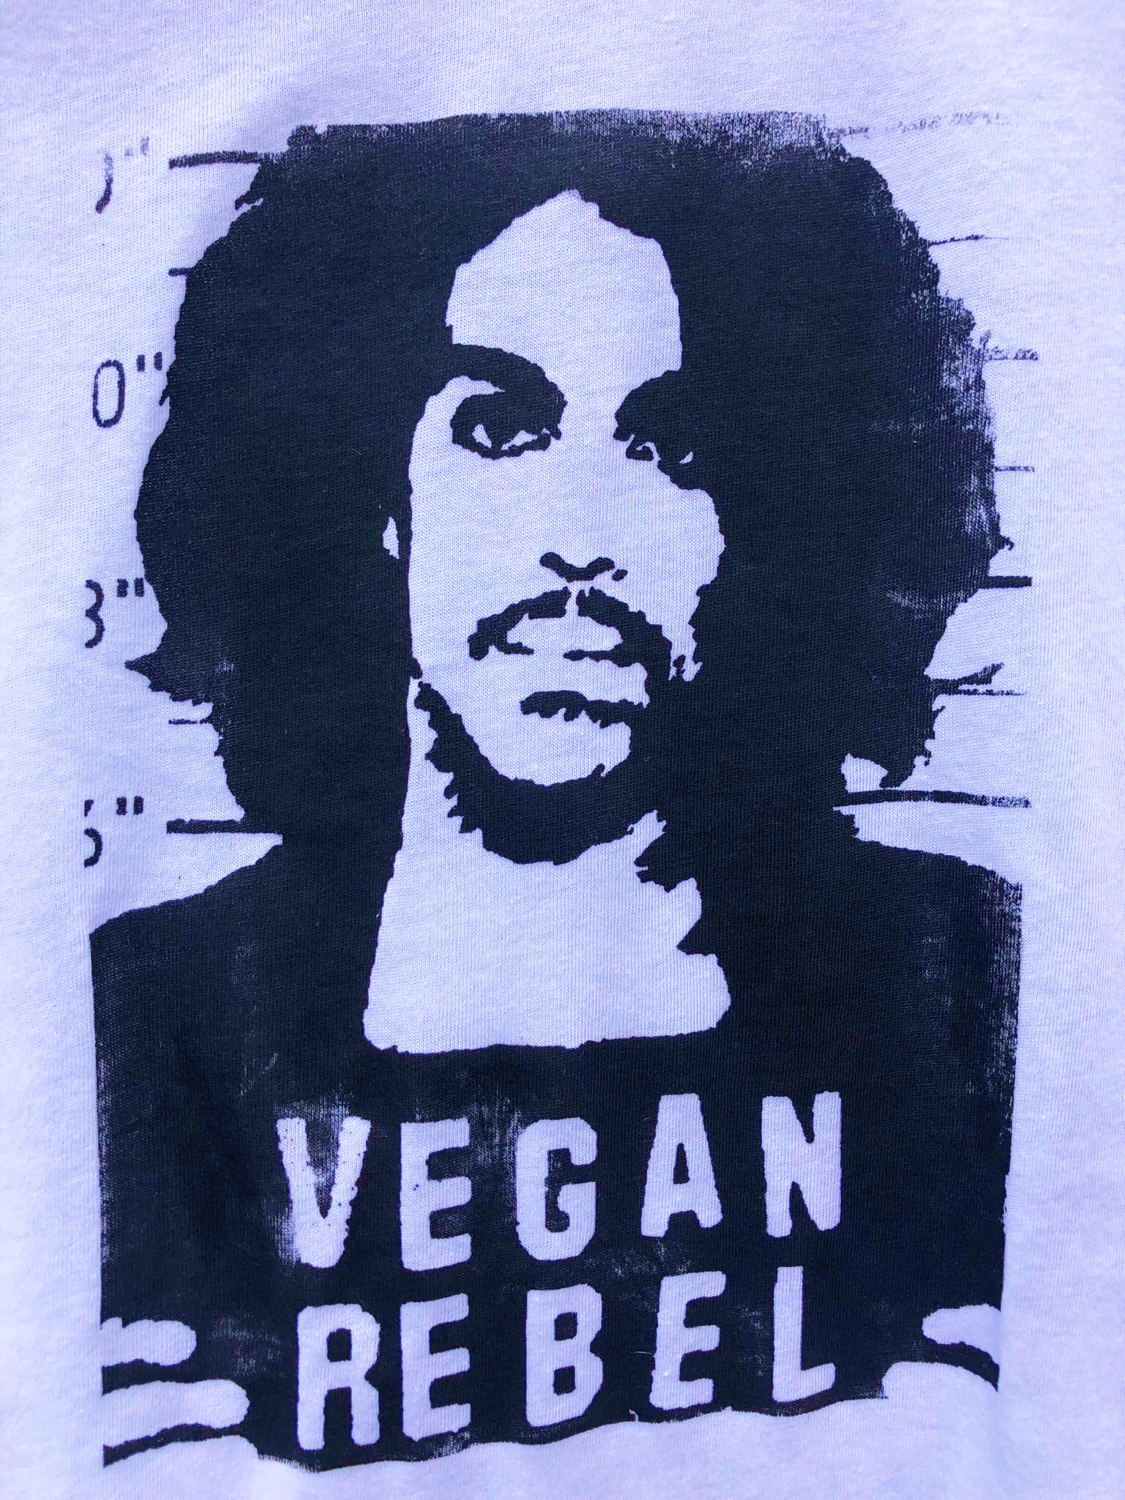 Prince Vegan Rebel Mug Shot T-shirt